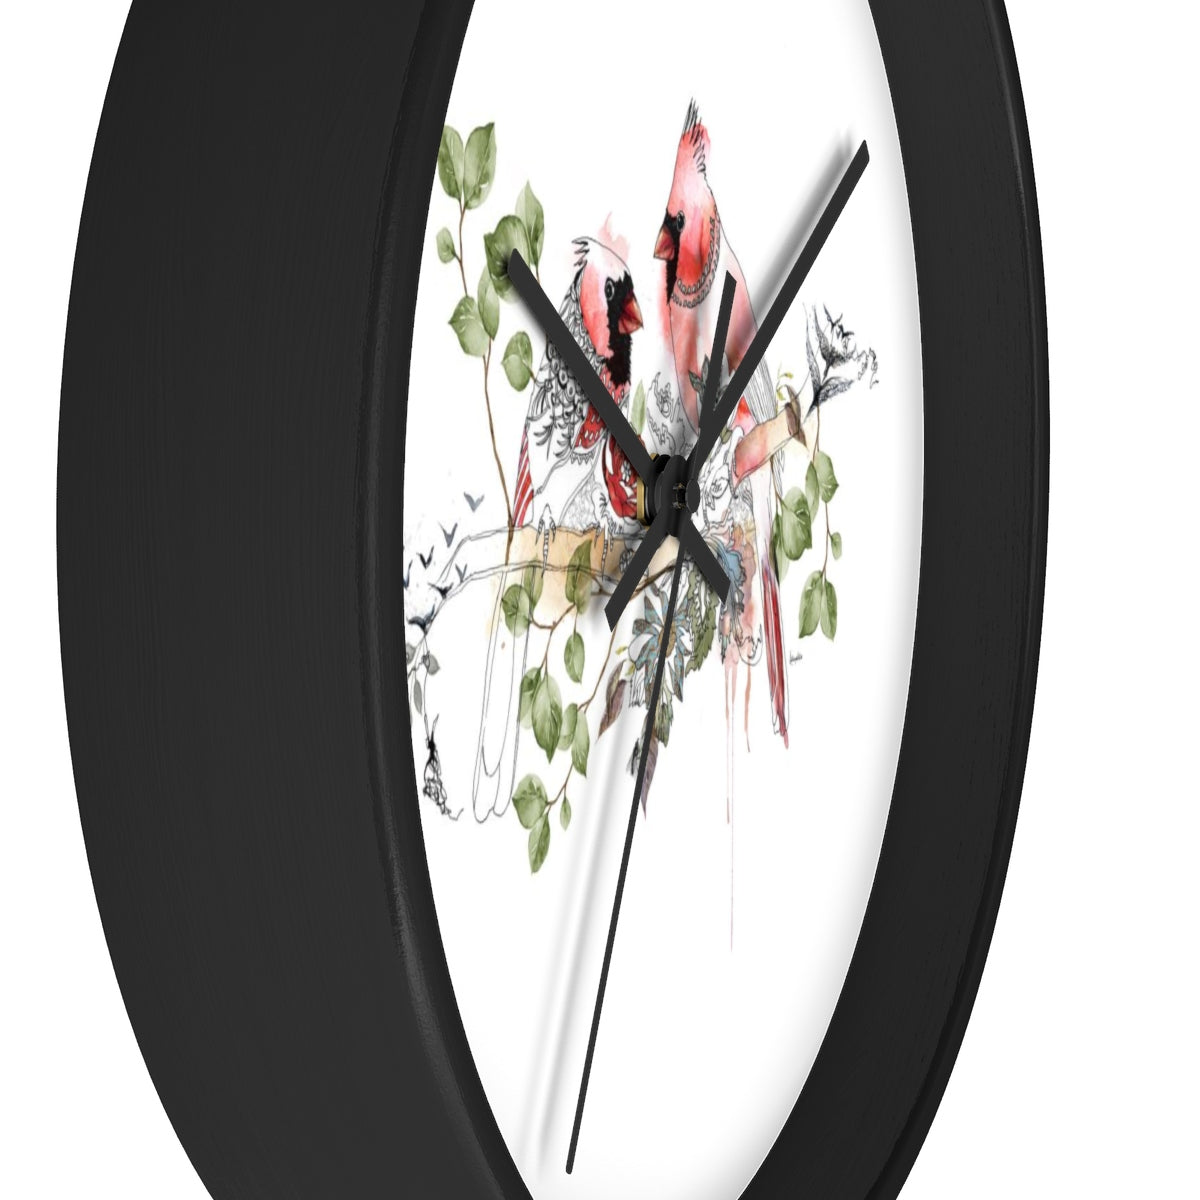 Cardinals Wall Clock - Liz Kapiloto Art & Design